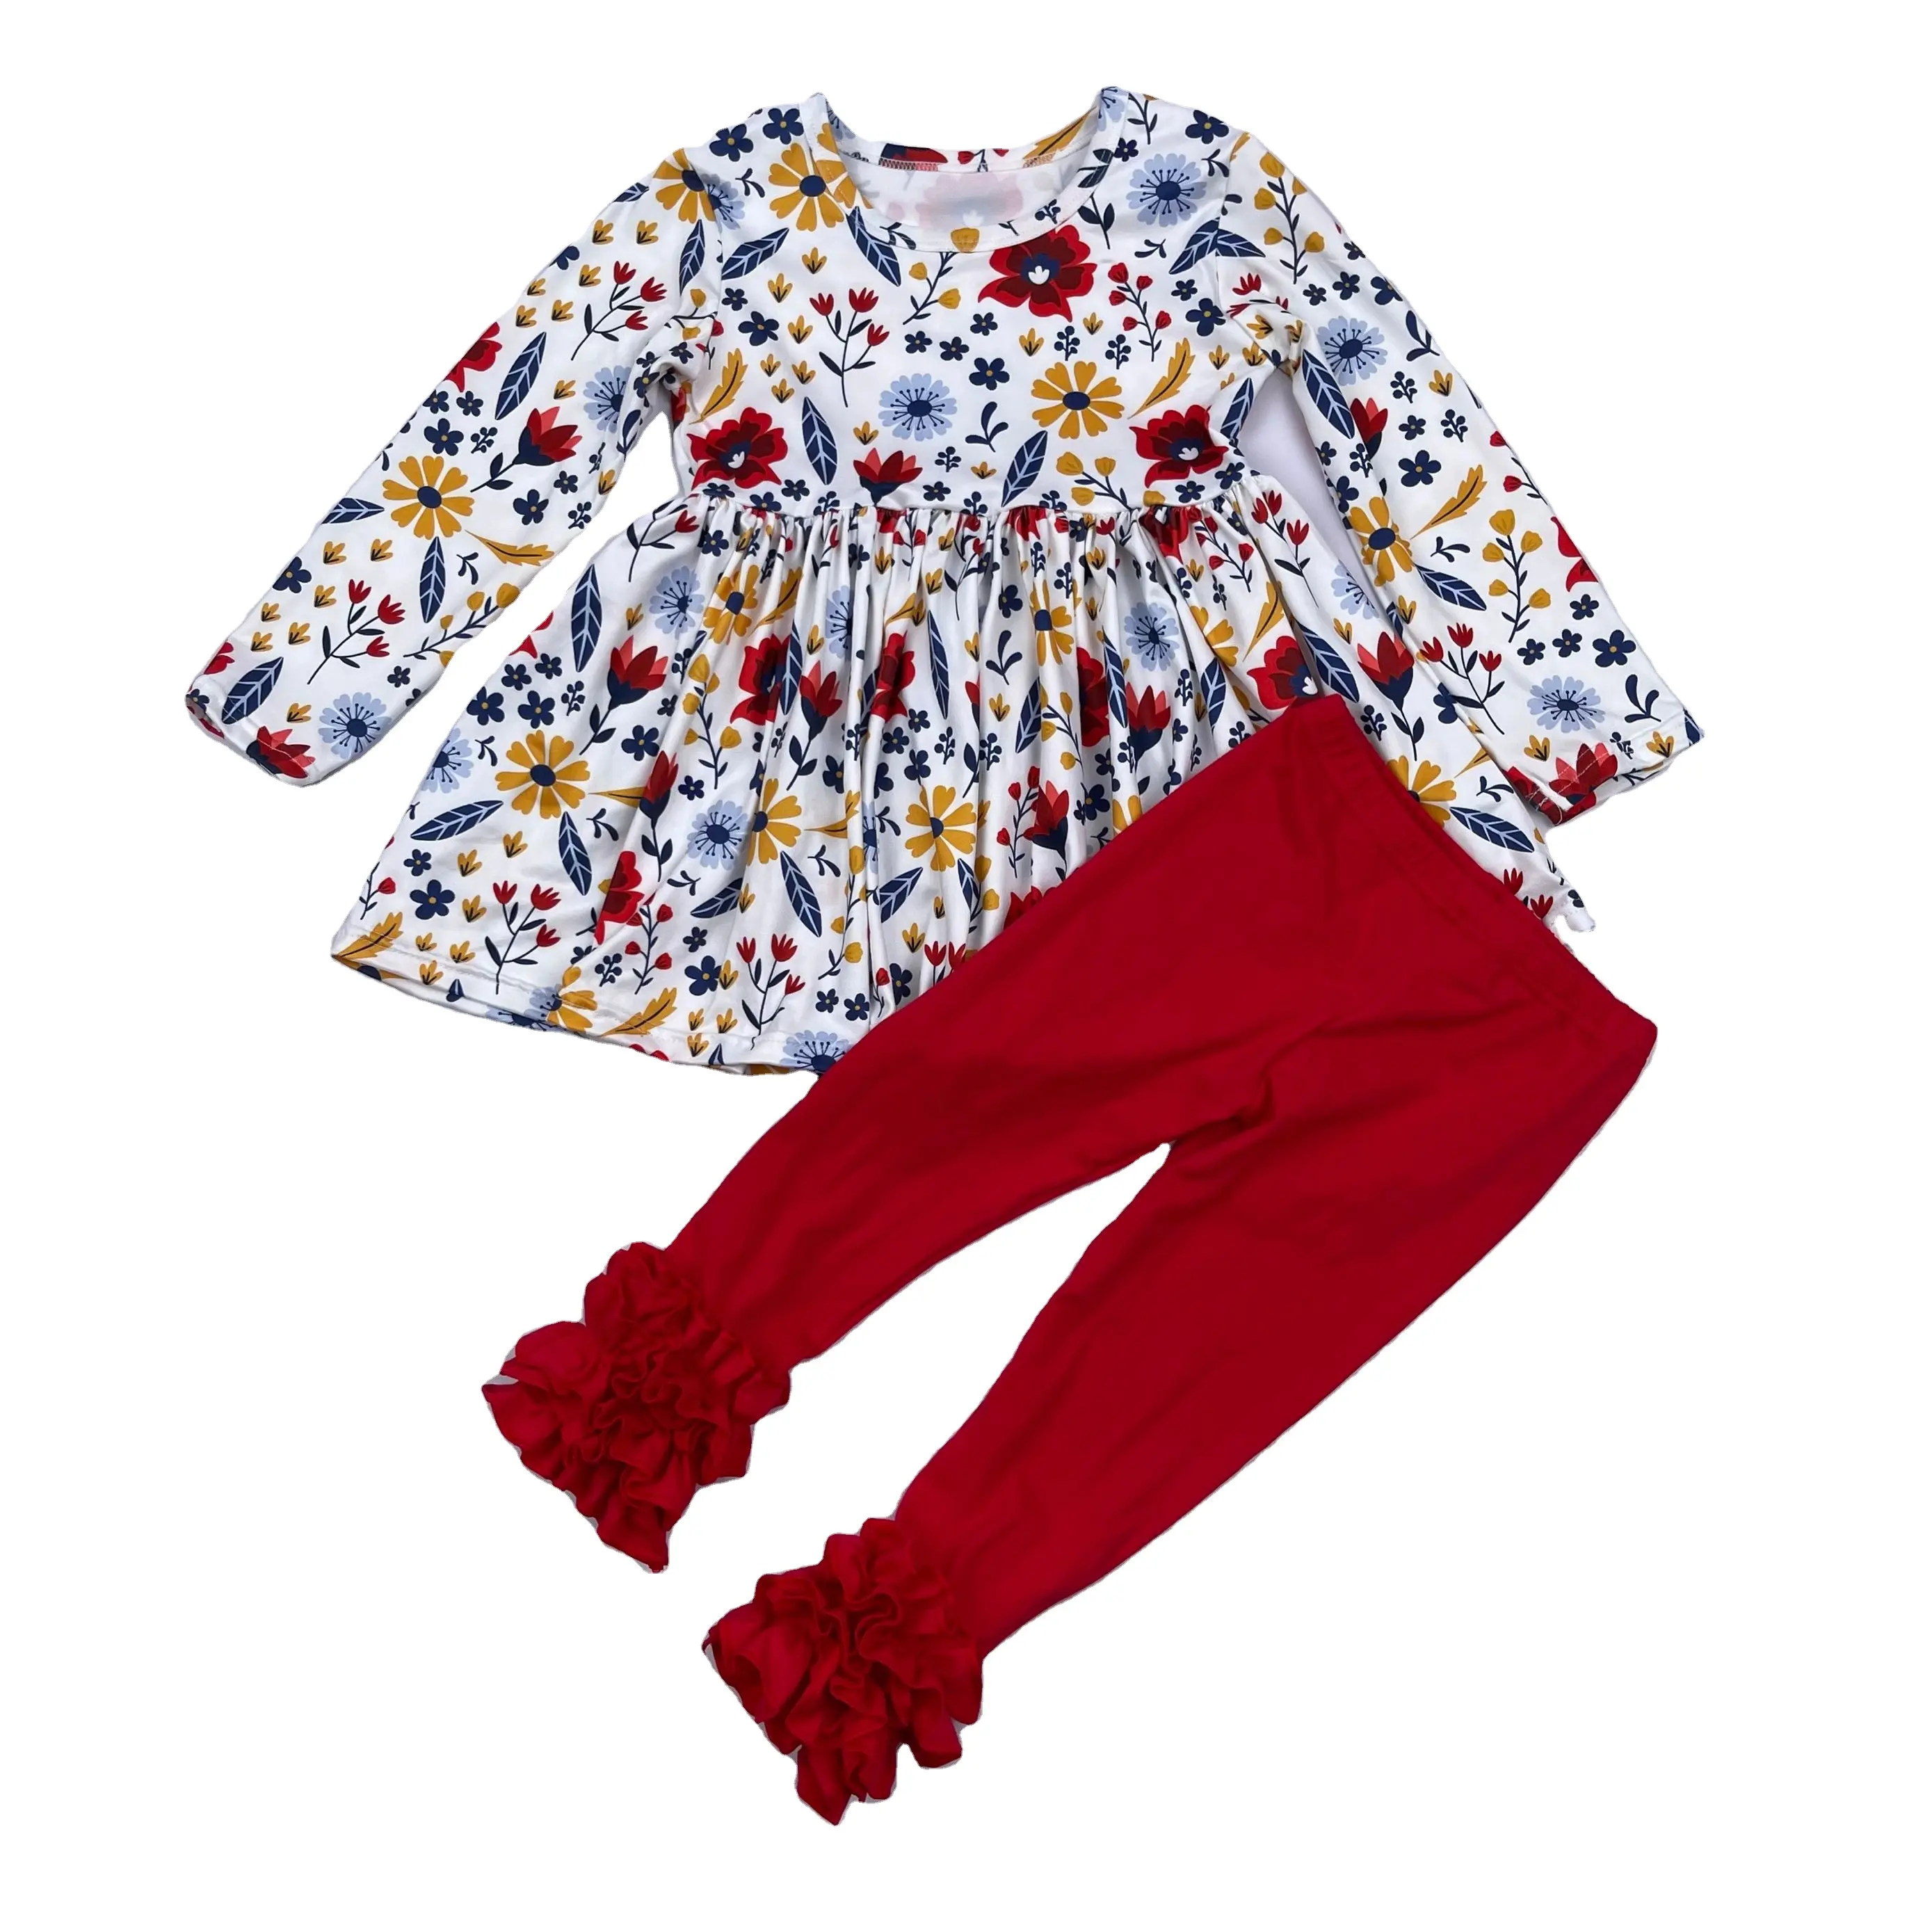 QL2021baby vestiti delle ragazze serie per bambini rosso blu floreale del vestito di stampa e ghiaccio legging delle ragazze abiti di festa boutique